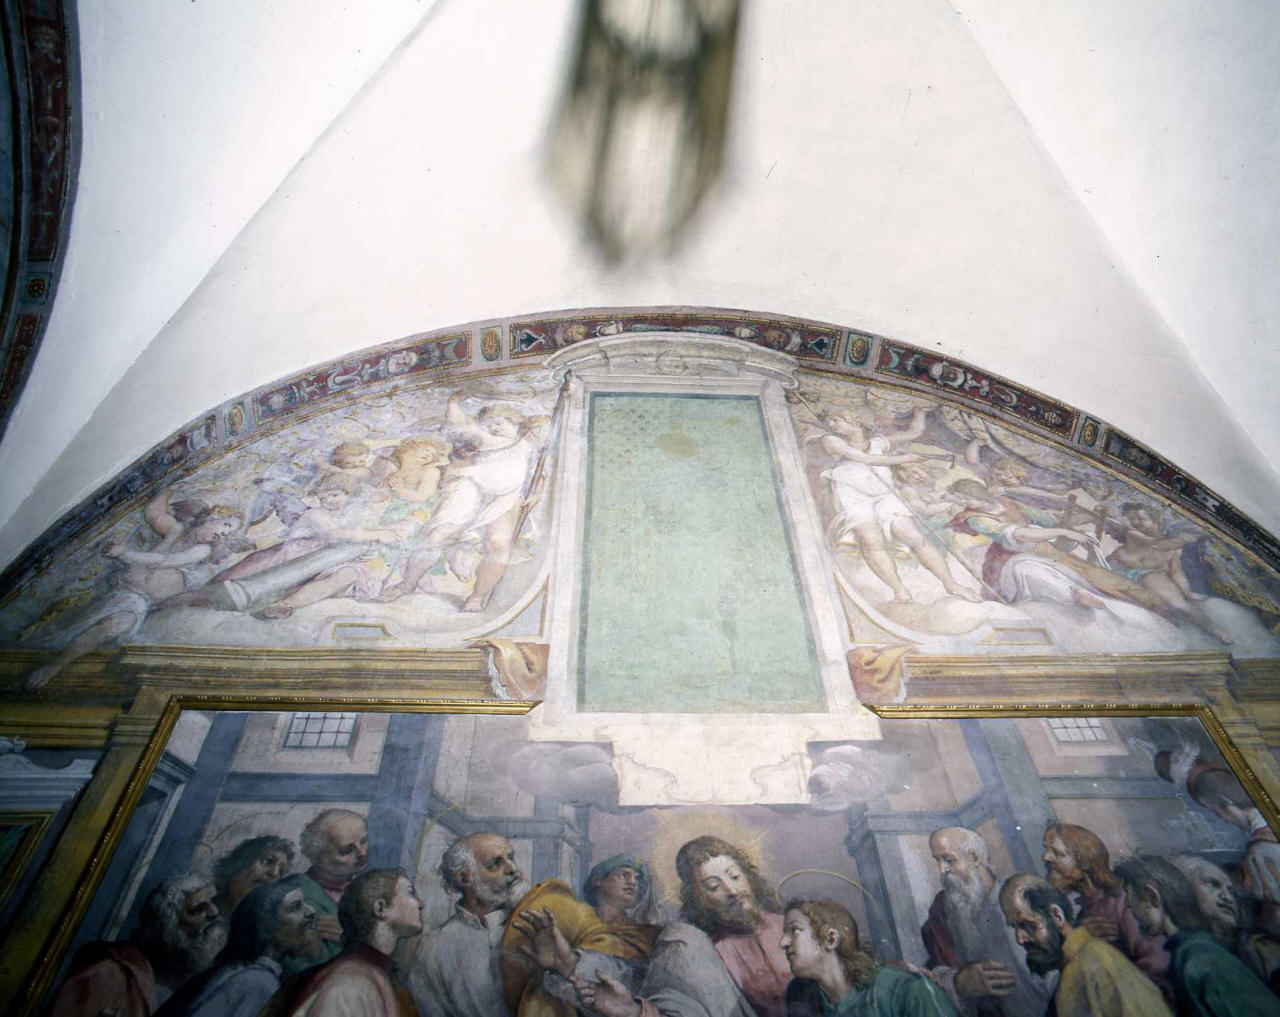 motivi decorativi a grottesche (dipinto) di Barbatelli Bernardino detto Poccetti (primo quarto sec. XVII)